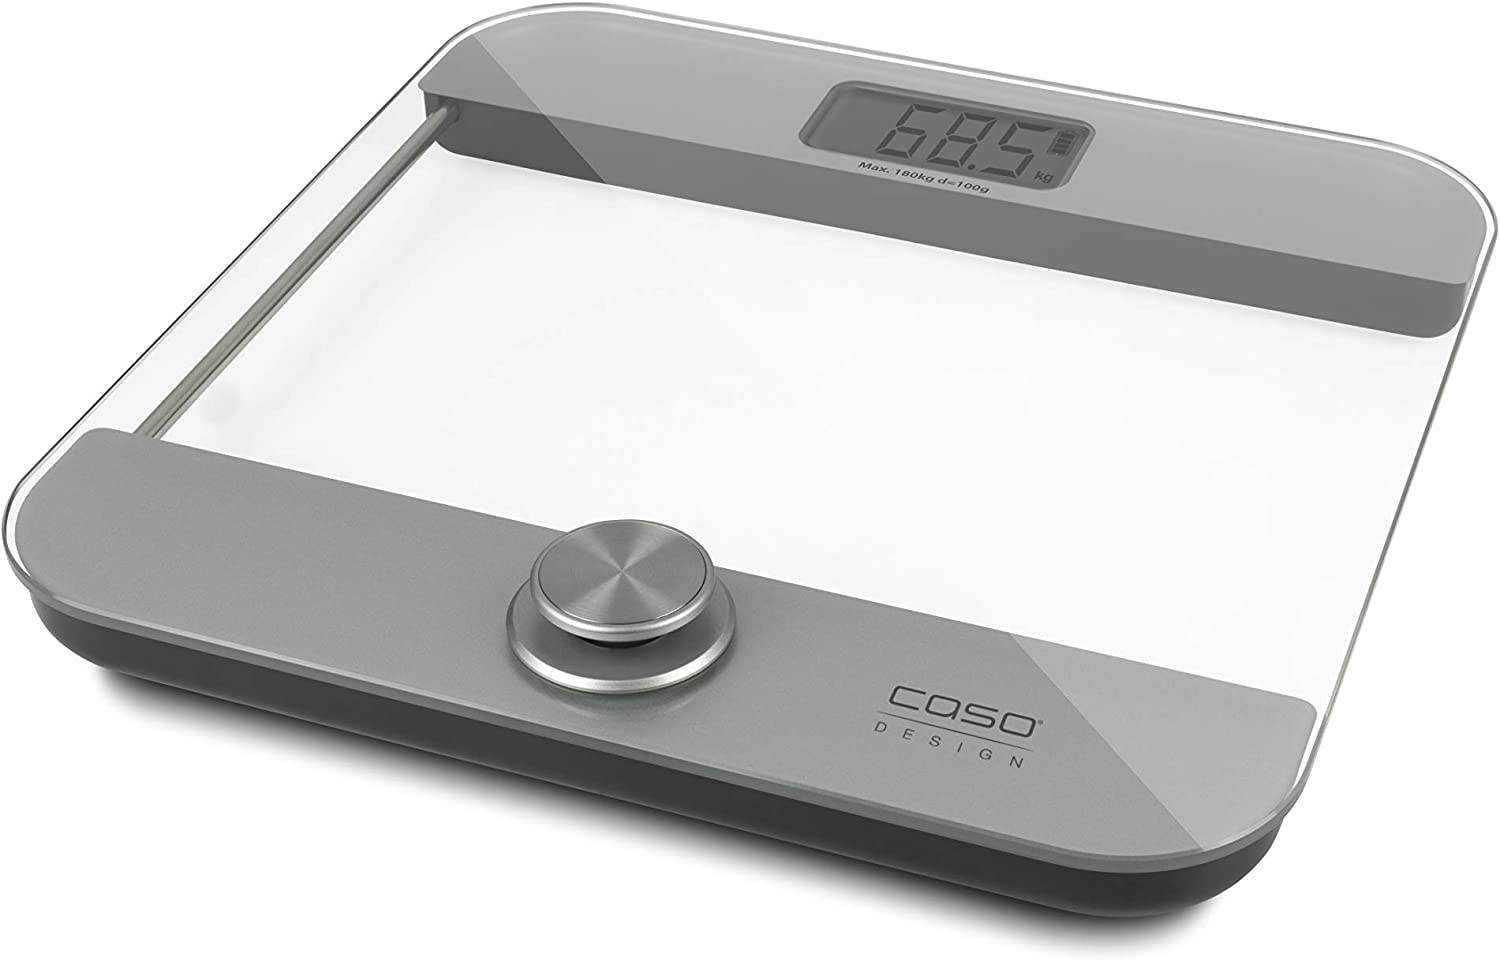 Bezbateriová digitální osobní váha CASO Body Energy Ecostyle / 180 kg / bílá / ROZBALENO